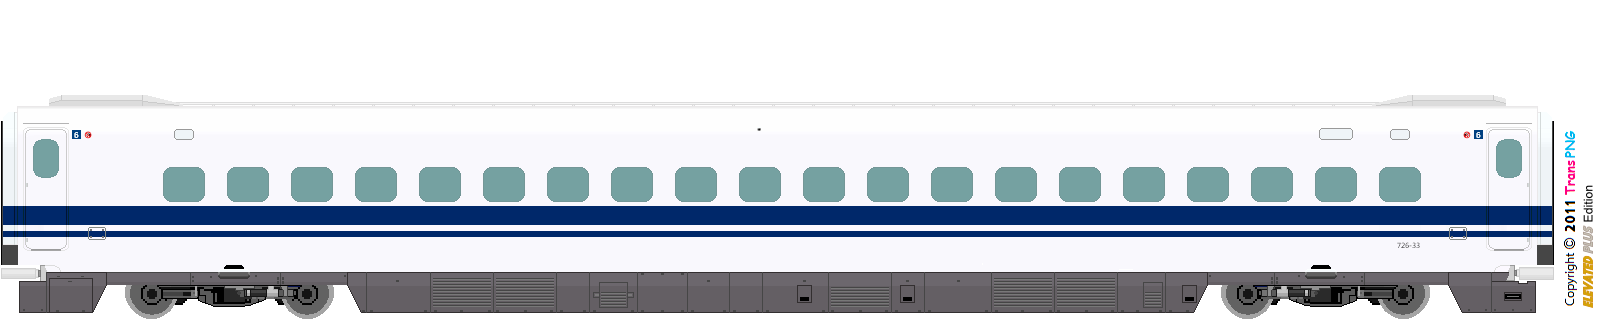 [9010] Central Japan Railway 52287846344_724b366774_o